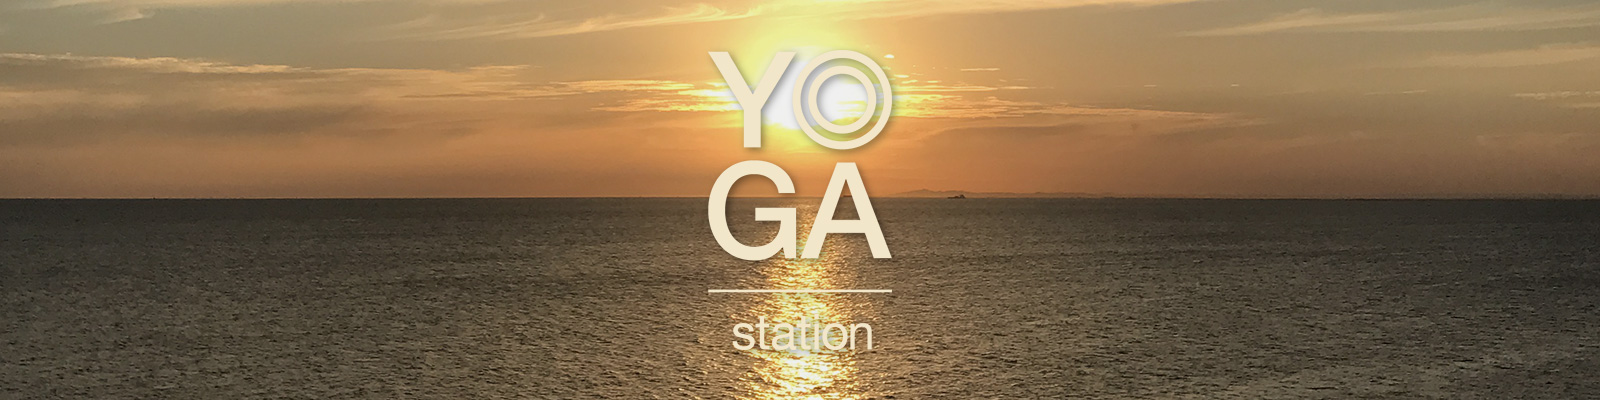 yoga-station-home-sunset-gv